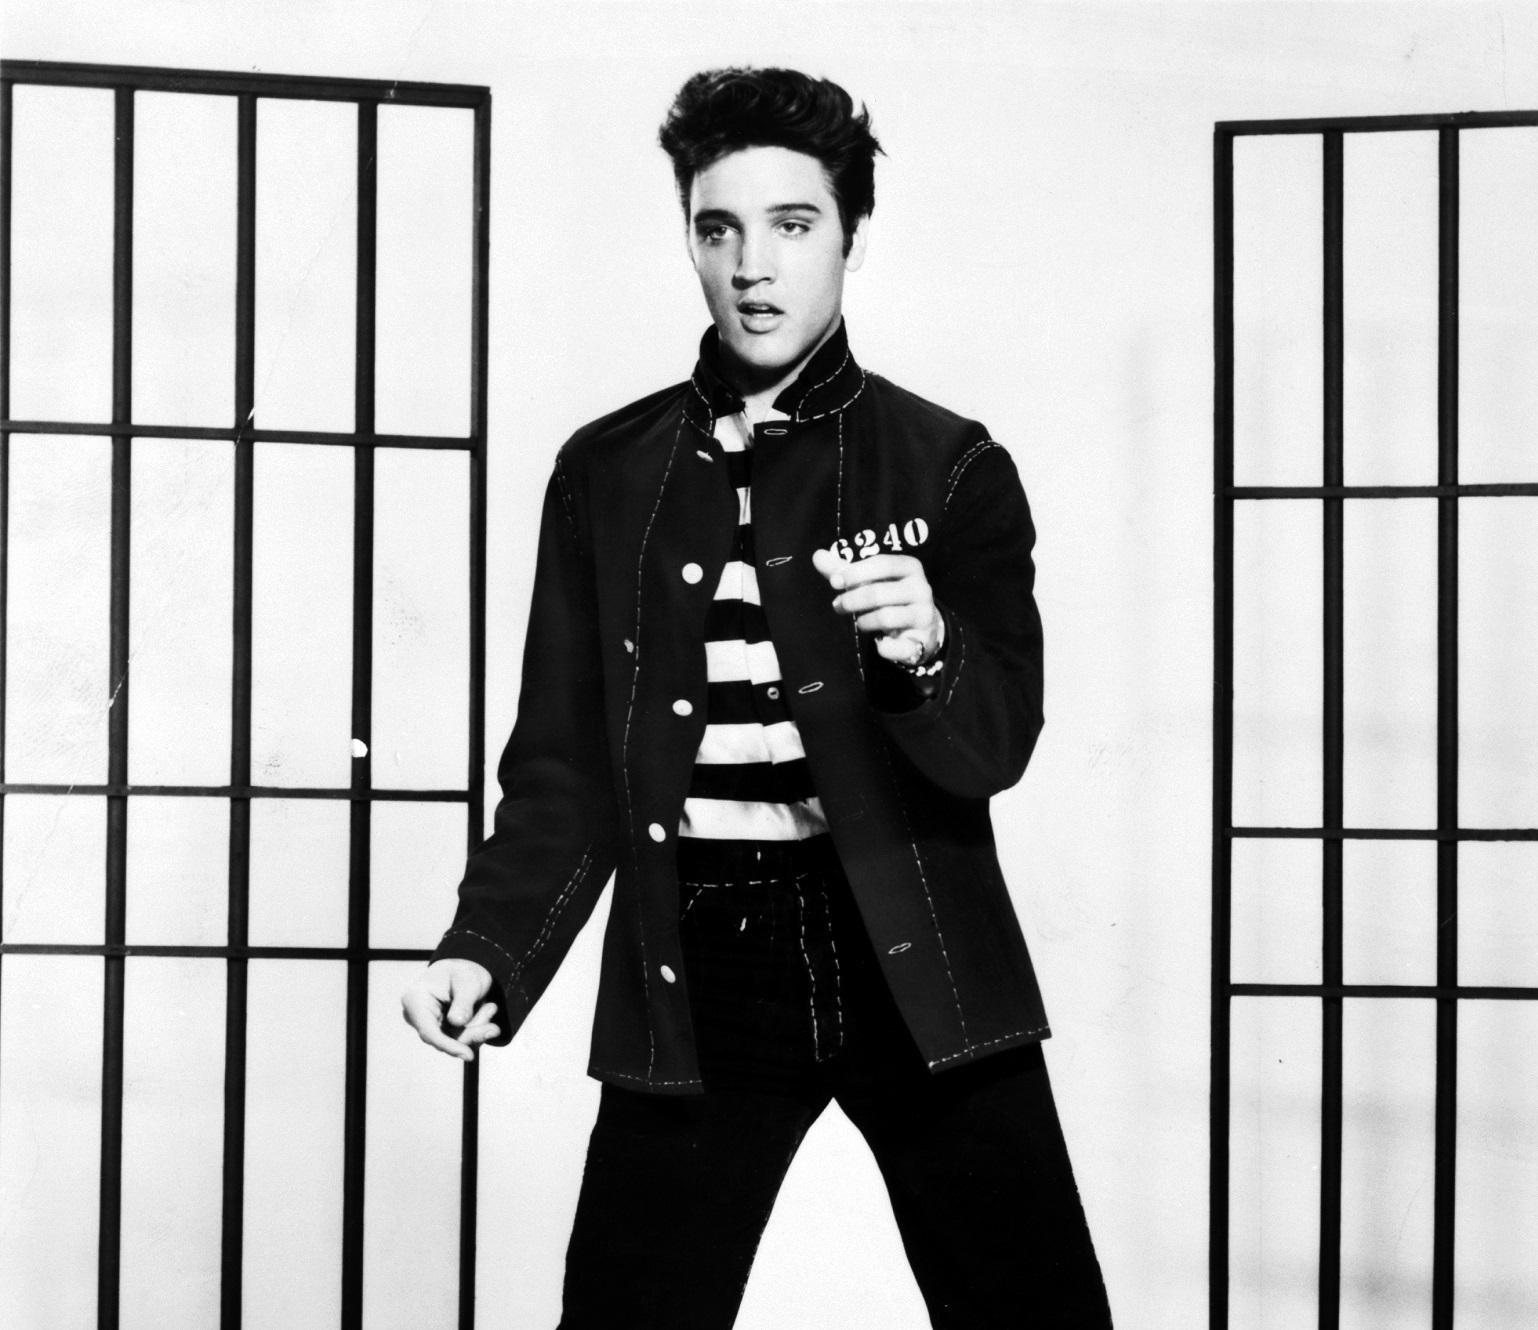 Sempat Tertunda karena COVID-19, Film Biopik Elvis Presley Bakal Kembali Diproduksi